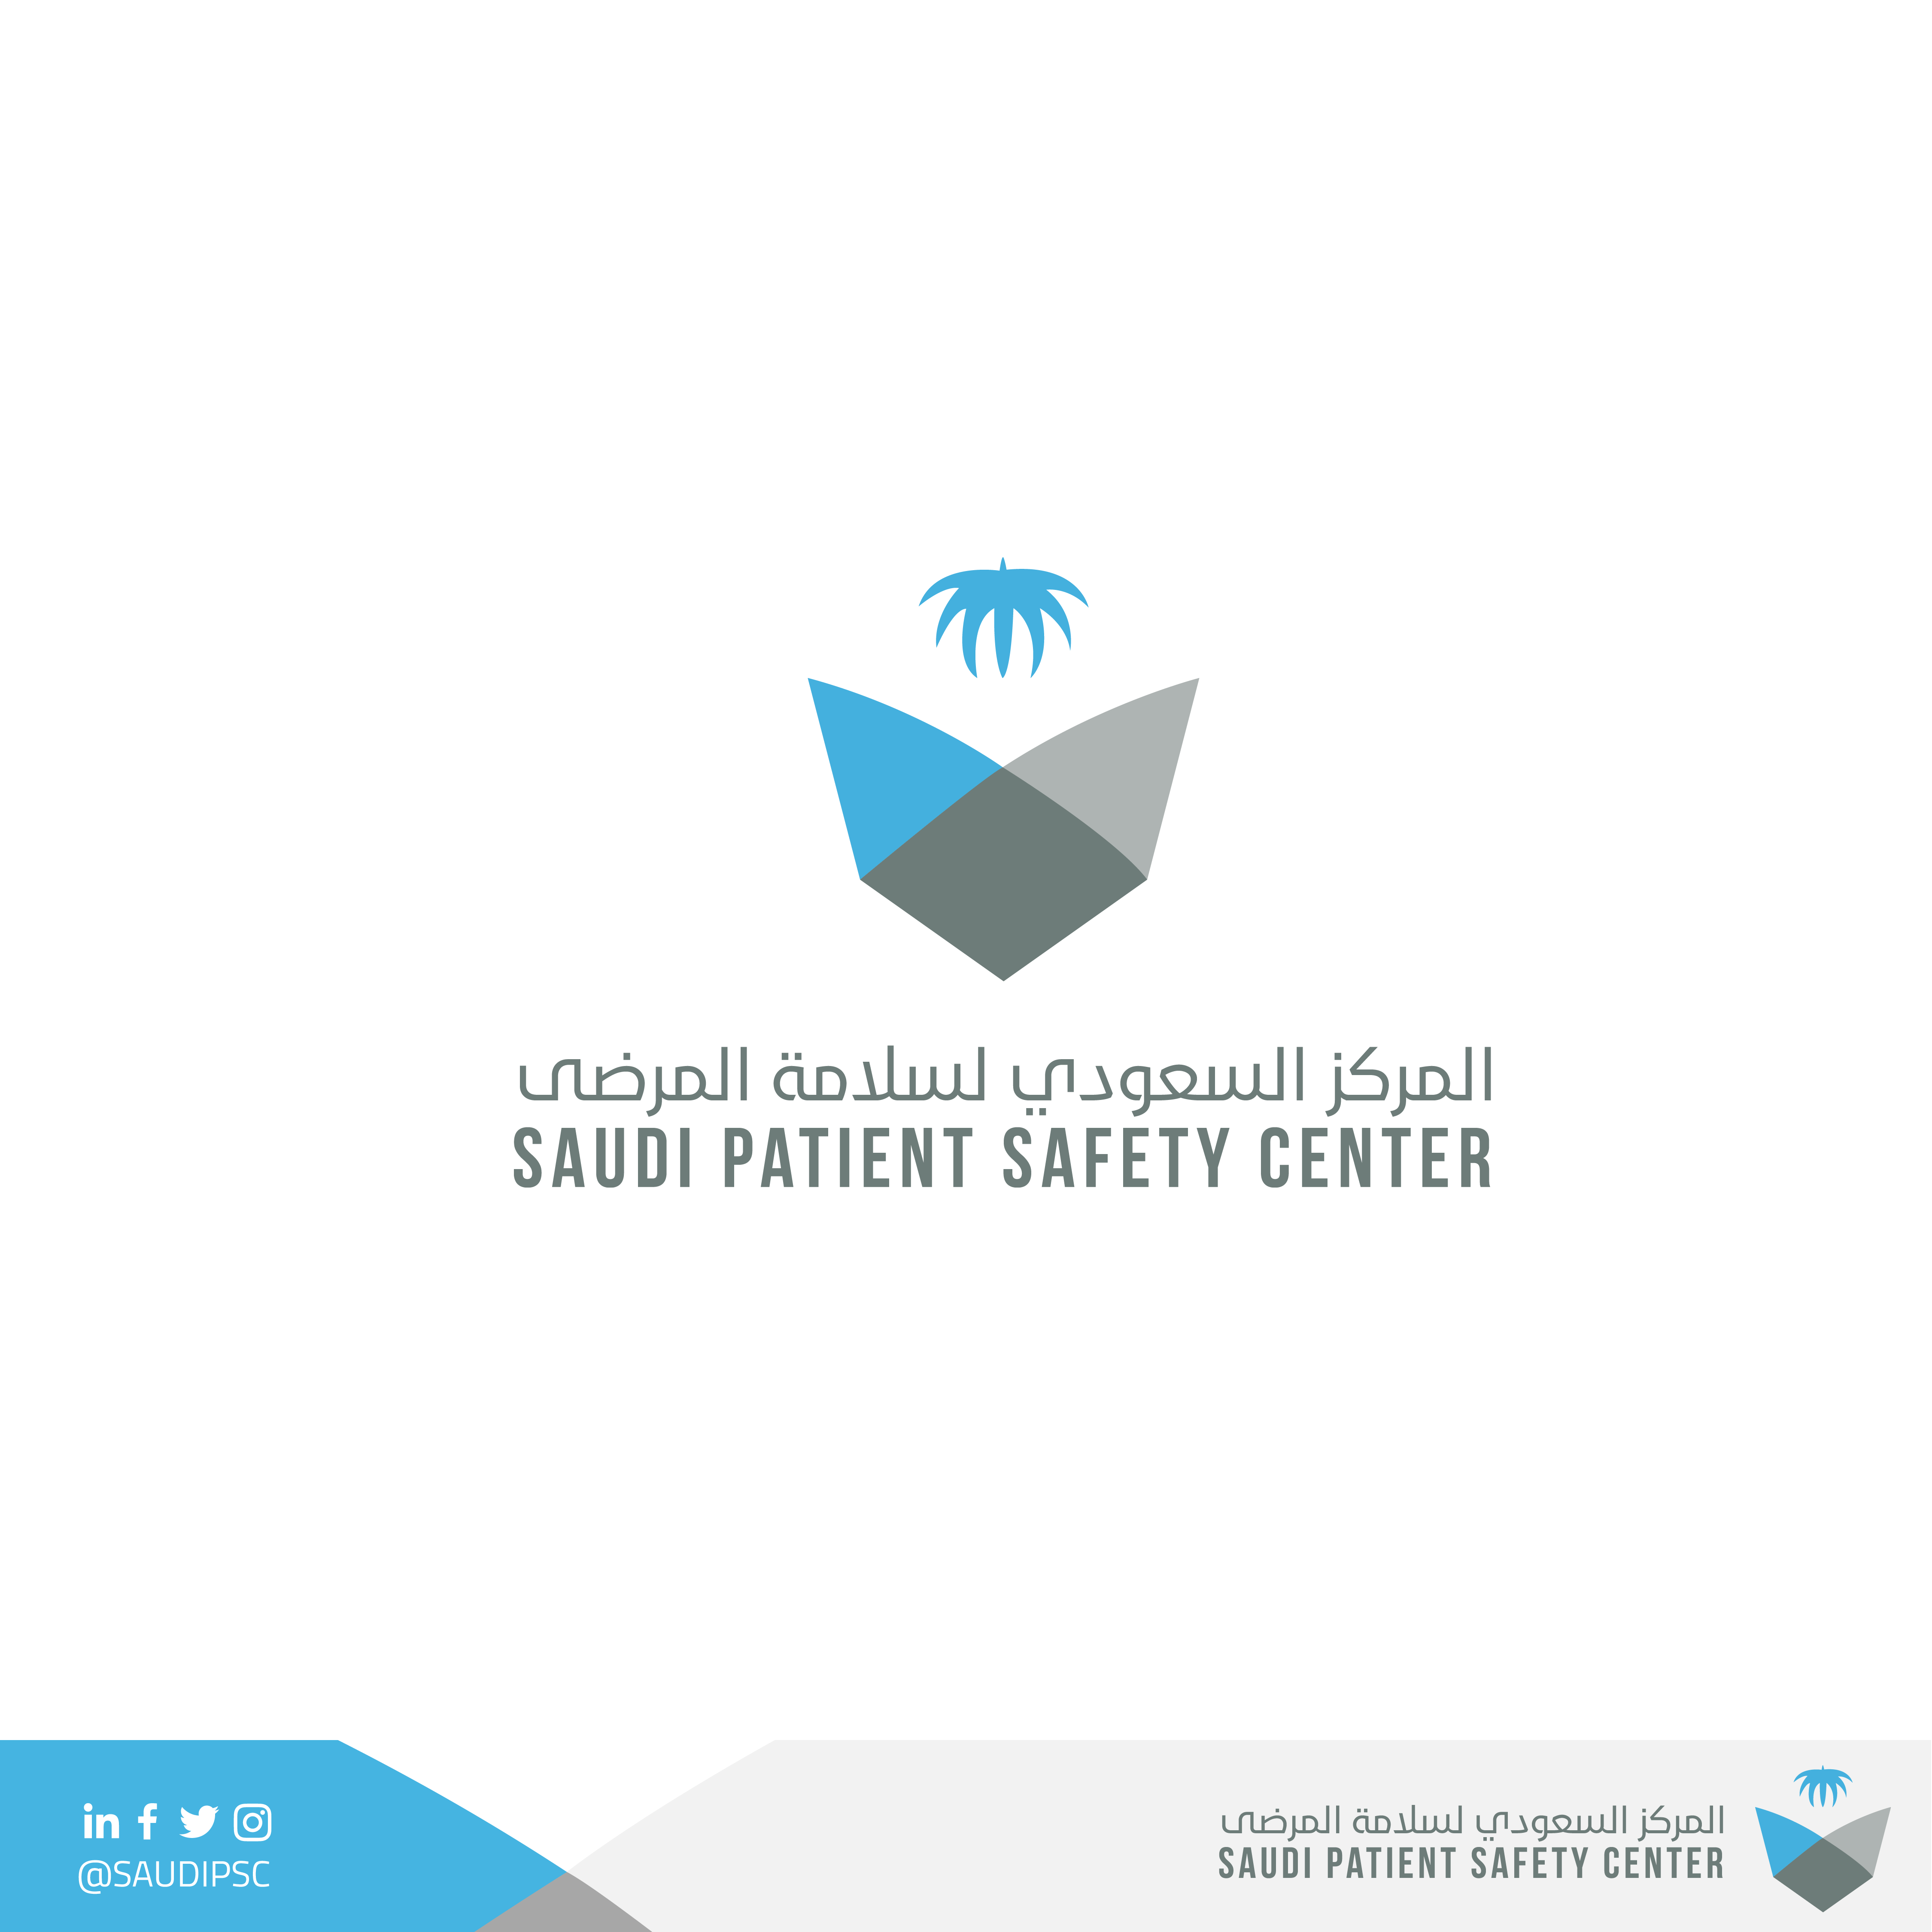 عقد المركز السعودي لسلامة المرضى ندوته الأولى لثقافة سلامة المرضى بالمنطقة الشرقية